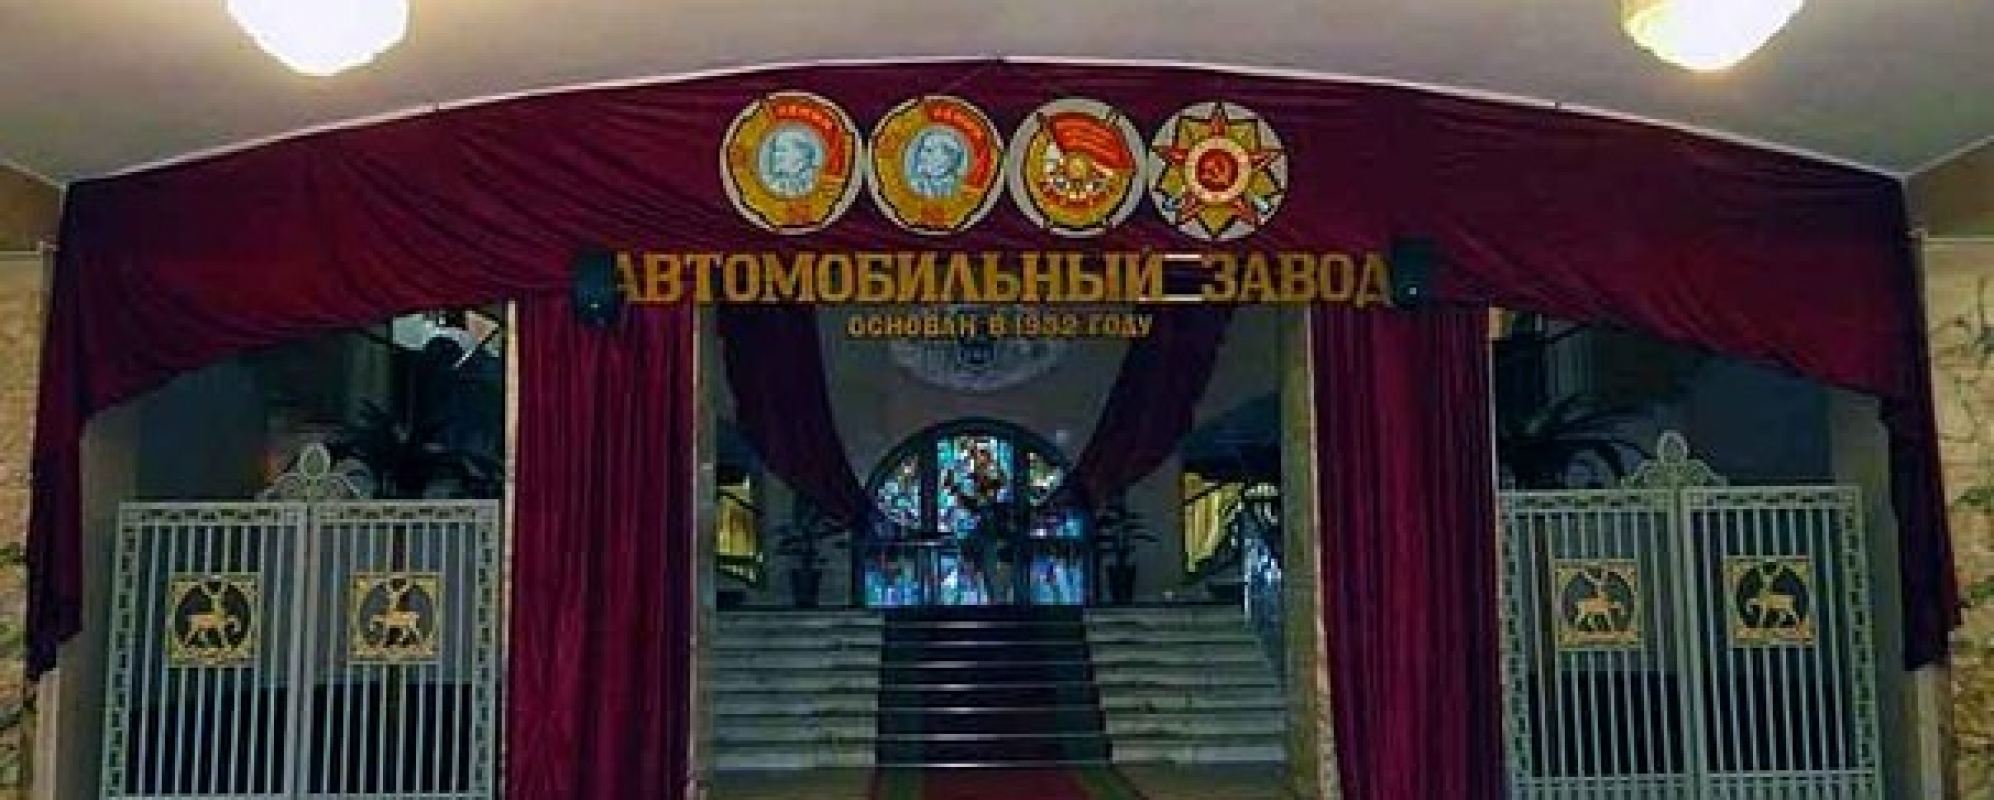 Фотографии домов культуры ДК ГАЗ